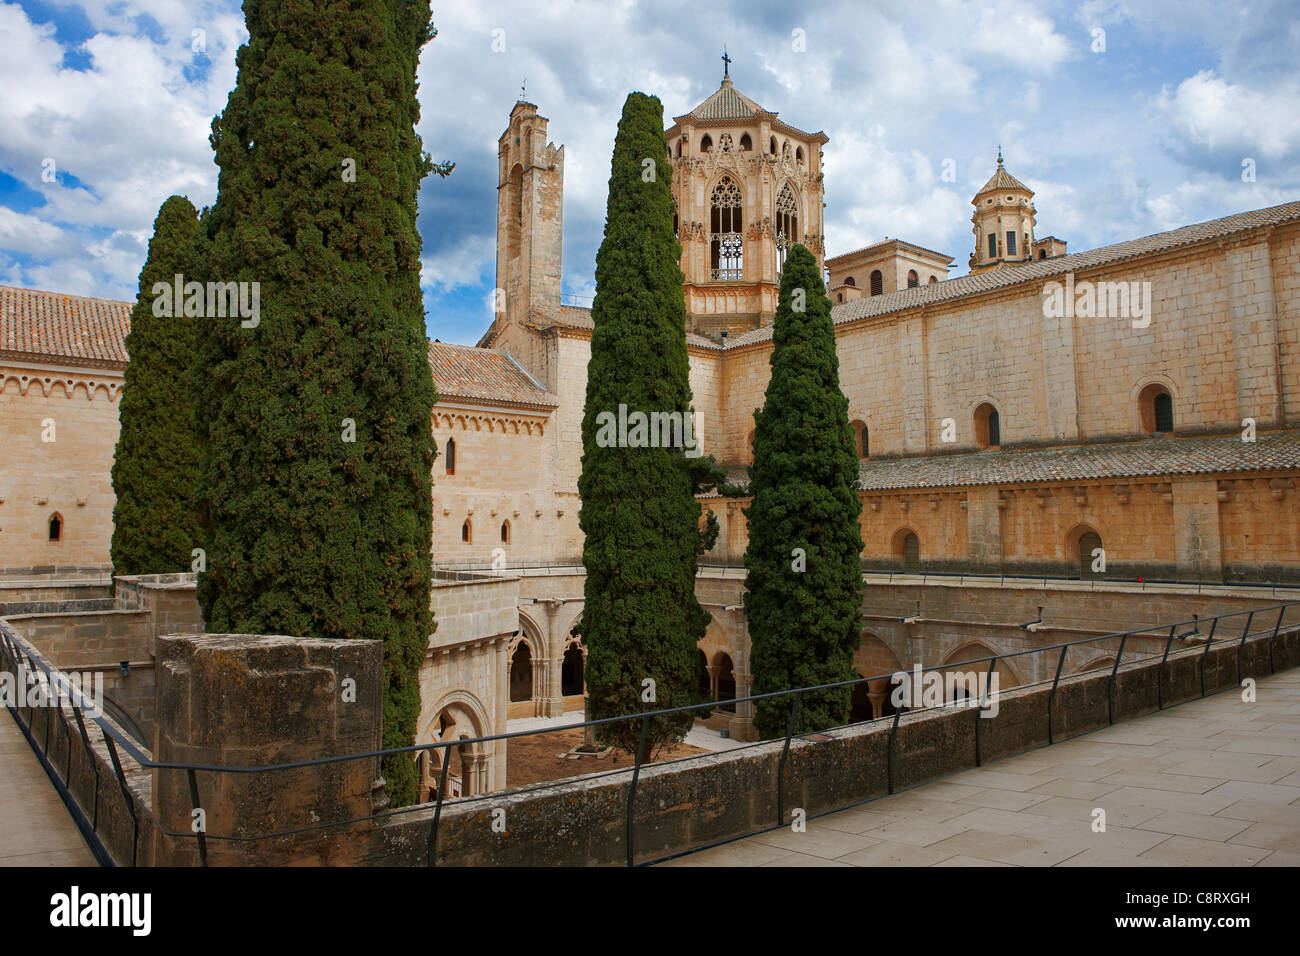 View of the Royal Abbey of Santa Maria de Poblet. Vimbodi i Poblet, Catalonia, Spain. Stock Photo